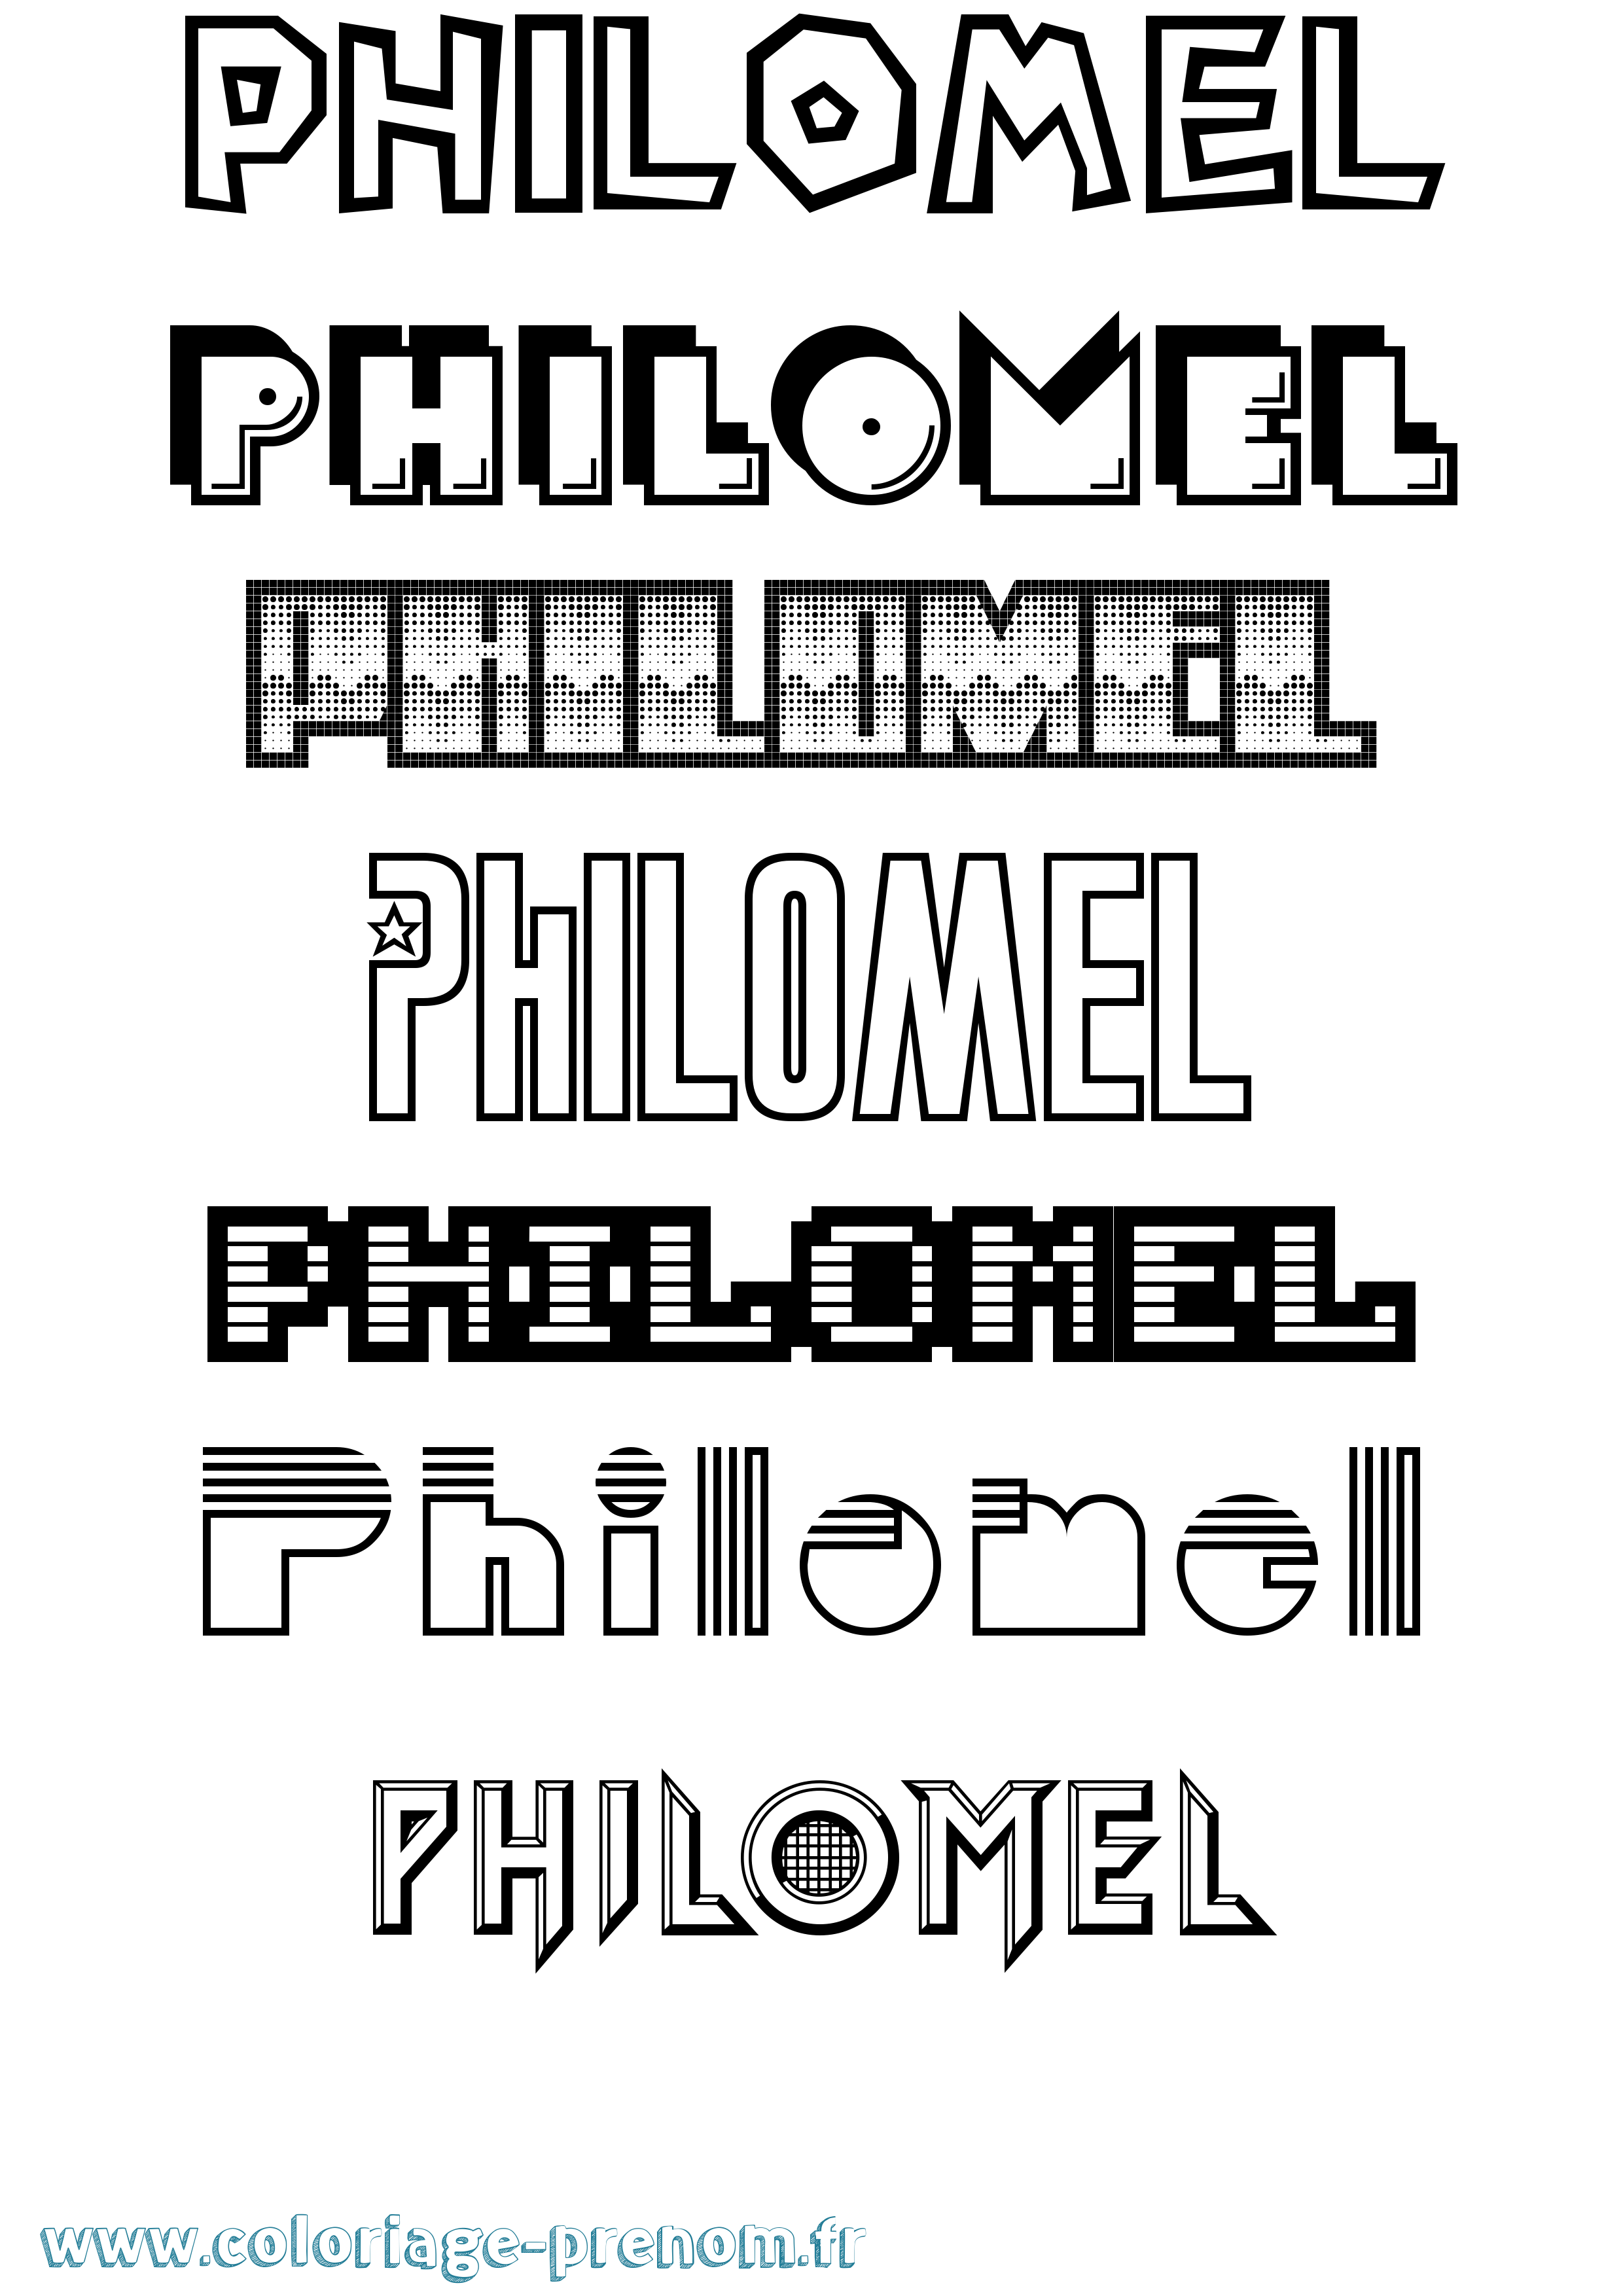 Coloriage prénom Philomel Jeux Vidéos